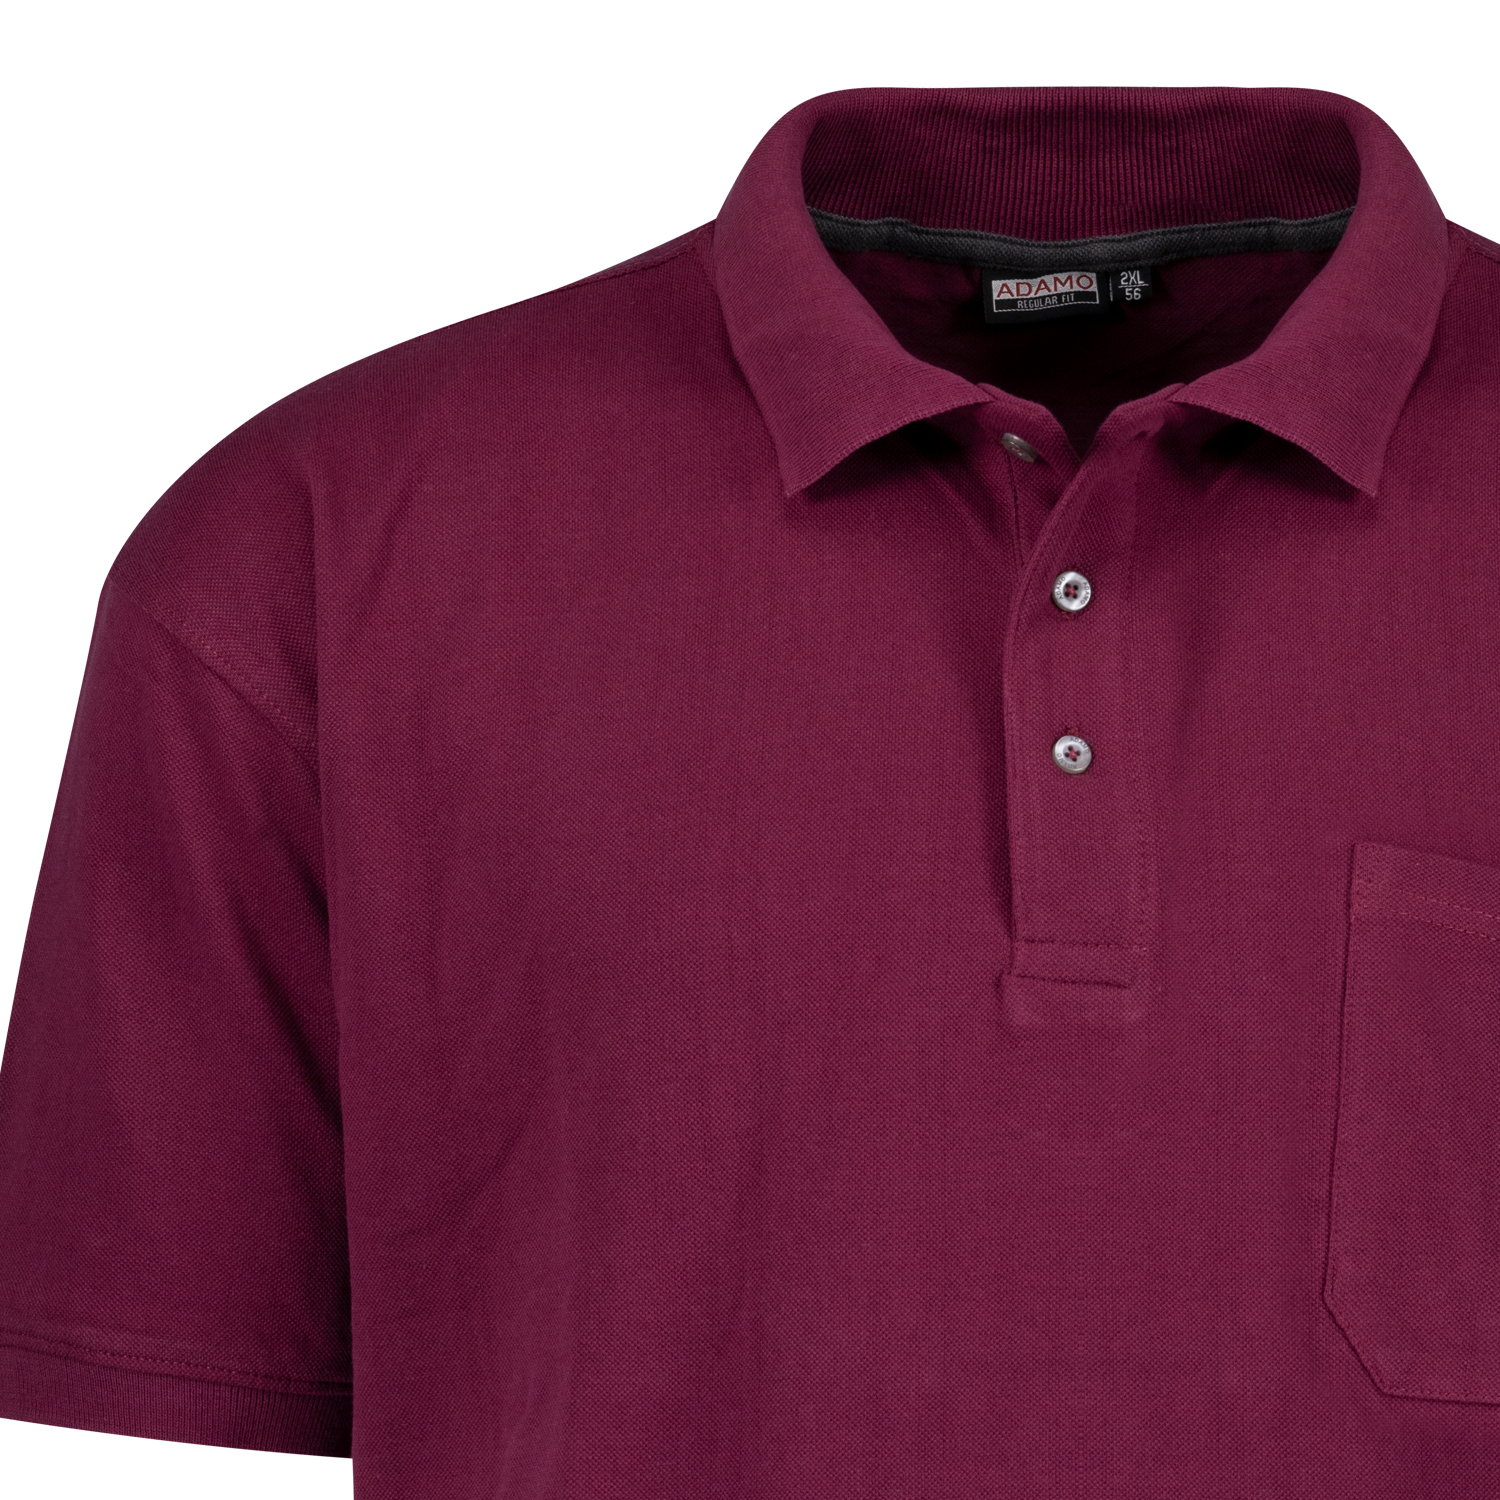 Brombeerrotes Kurzarm Polo Shirt KLAAS von ADAMO in Pique Qualität für Herren in großen Größen bis 10XL